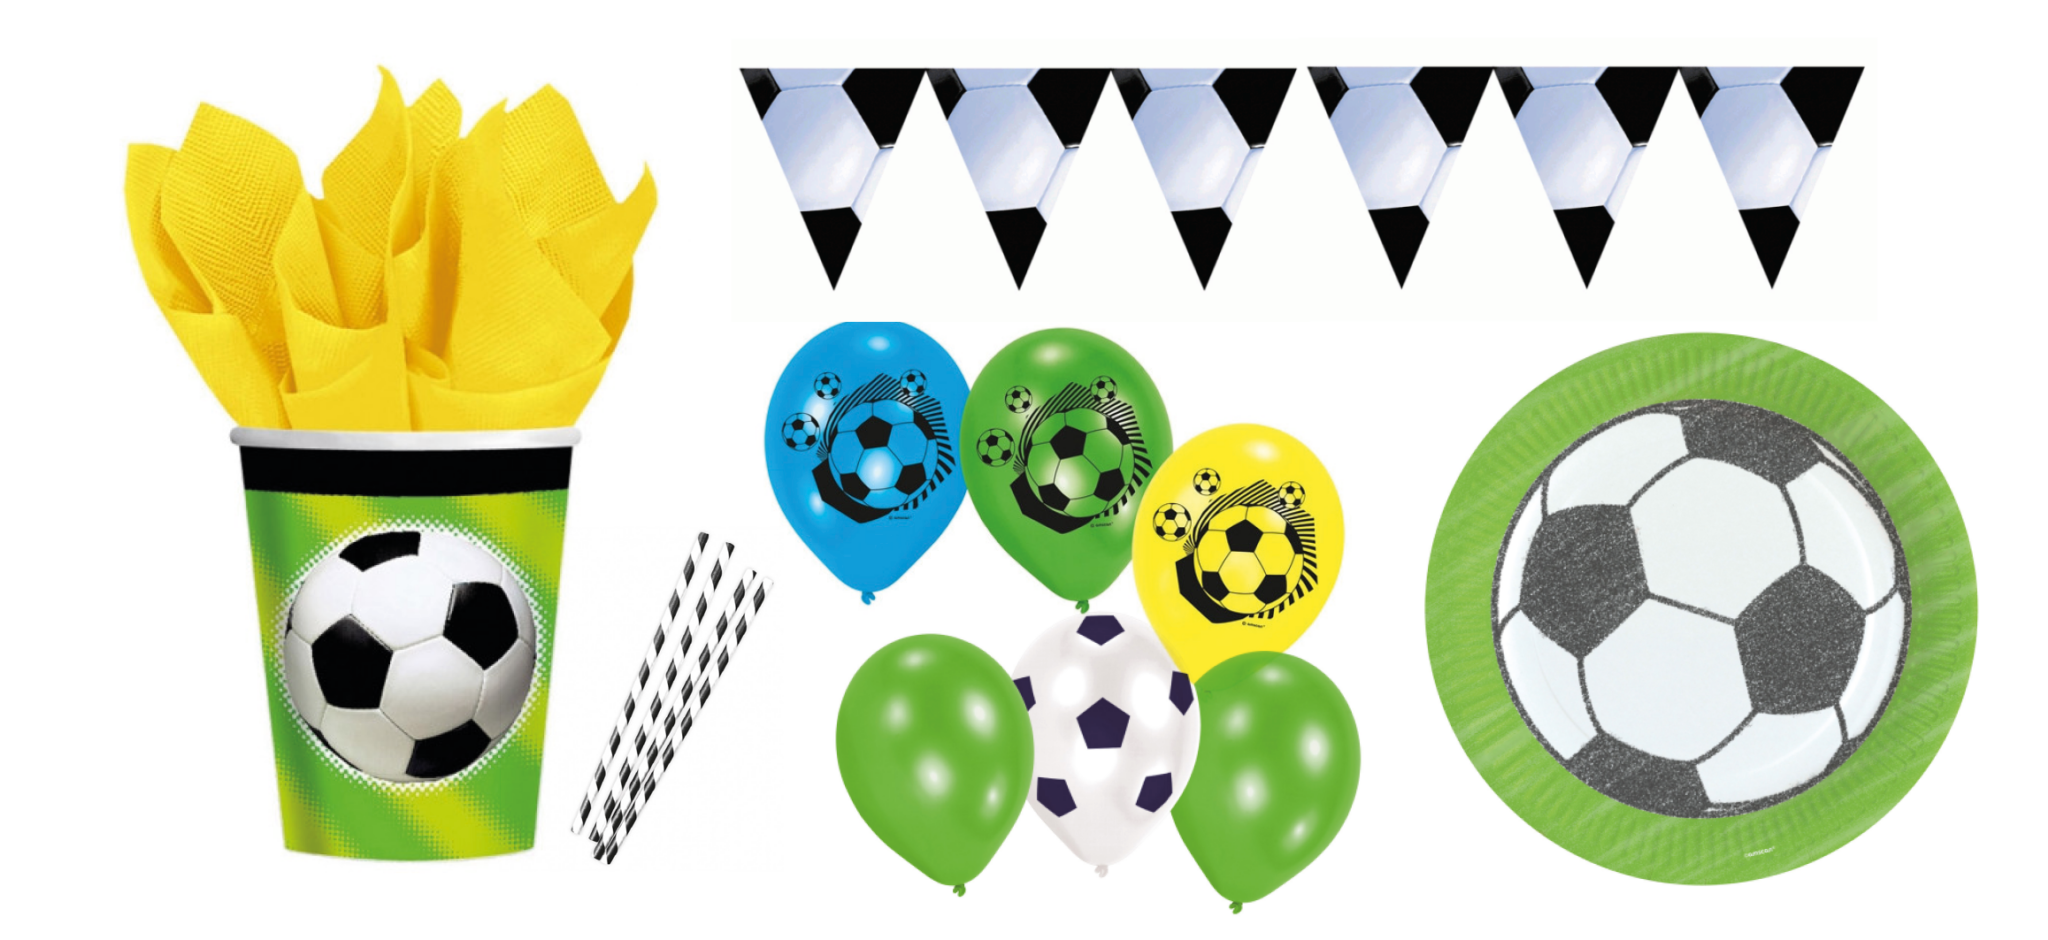 fodbold fest, fodbold fødselsdag, borddækning til fodbold fødselsdags, fødselsdags med fodbold tema, Fodbold tema fest, fodbold borddækning, drenge fødselsdags, temaer til drenge fødselsdag,